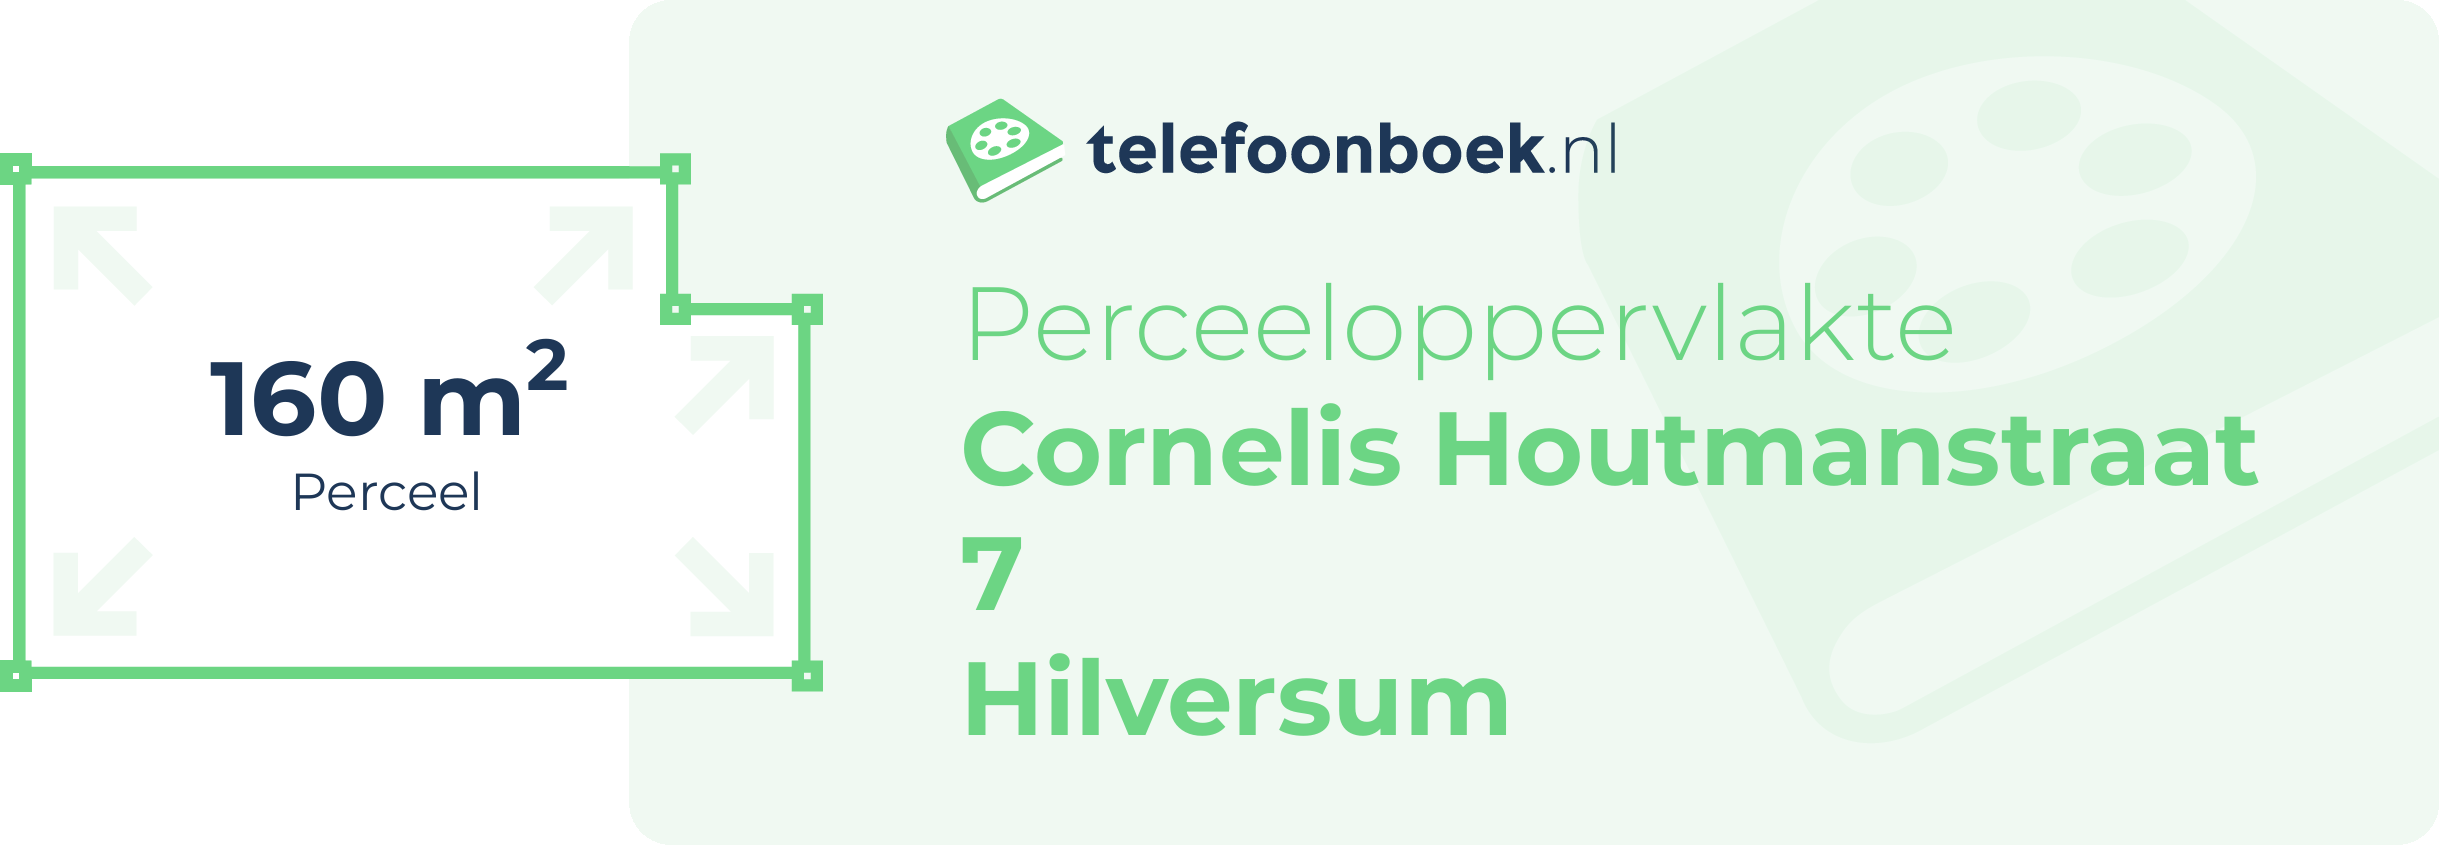 Perceeloppervlakte Cornelis Houtmanstraat 7 Hilversum